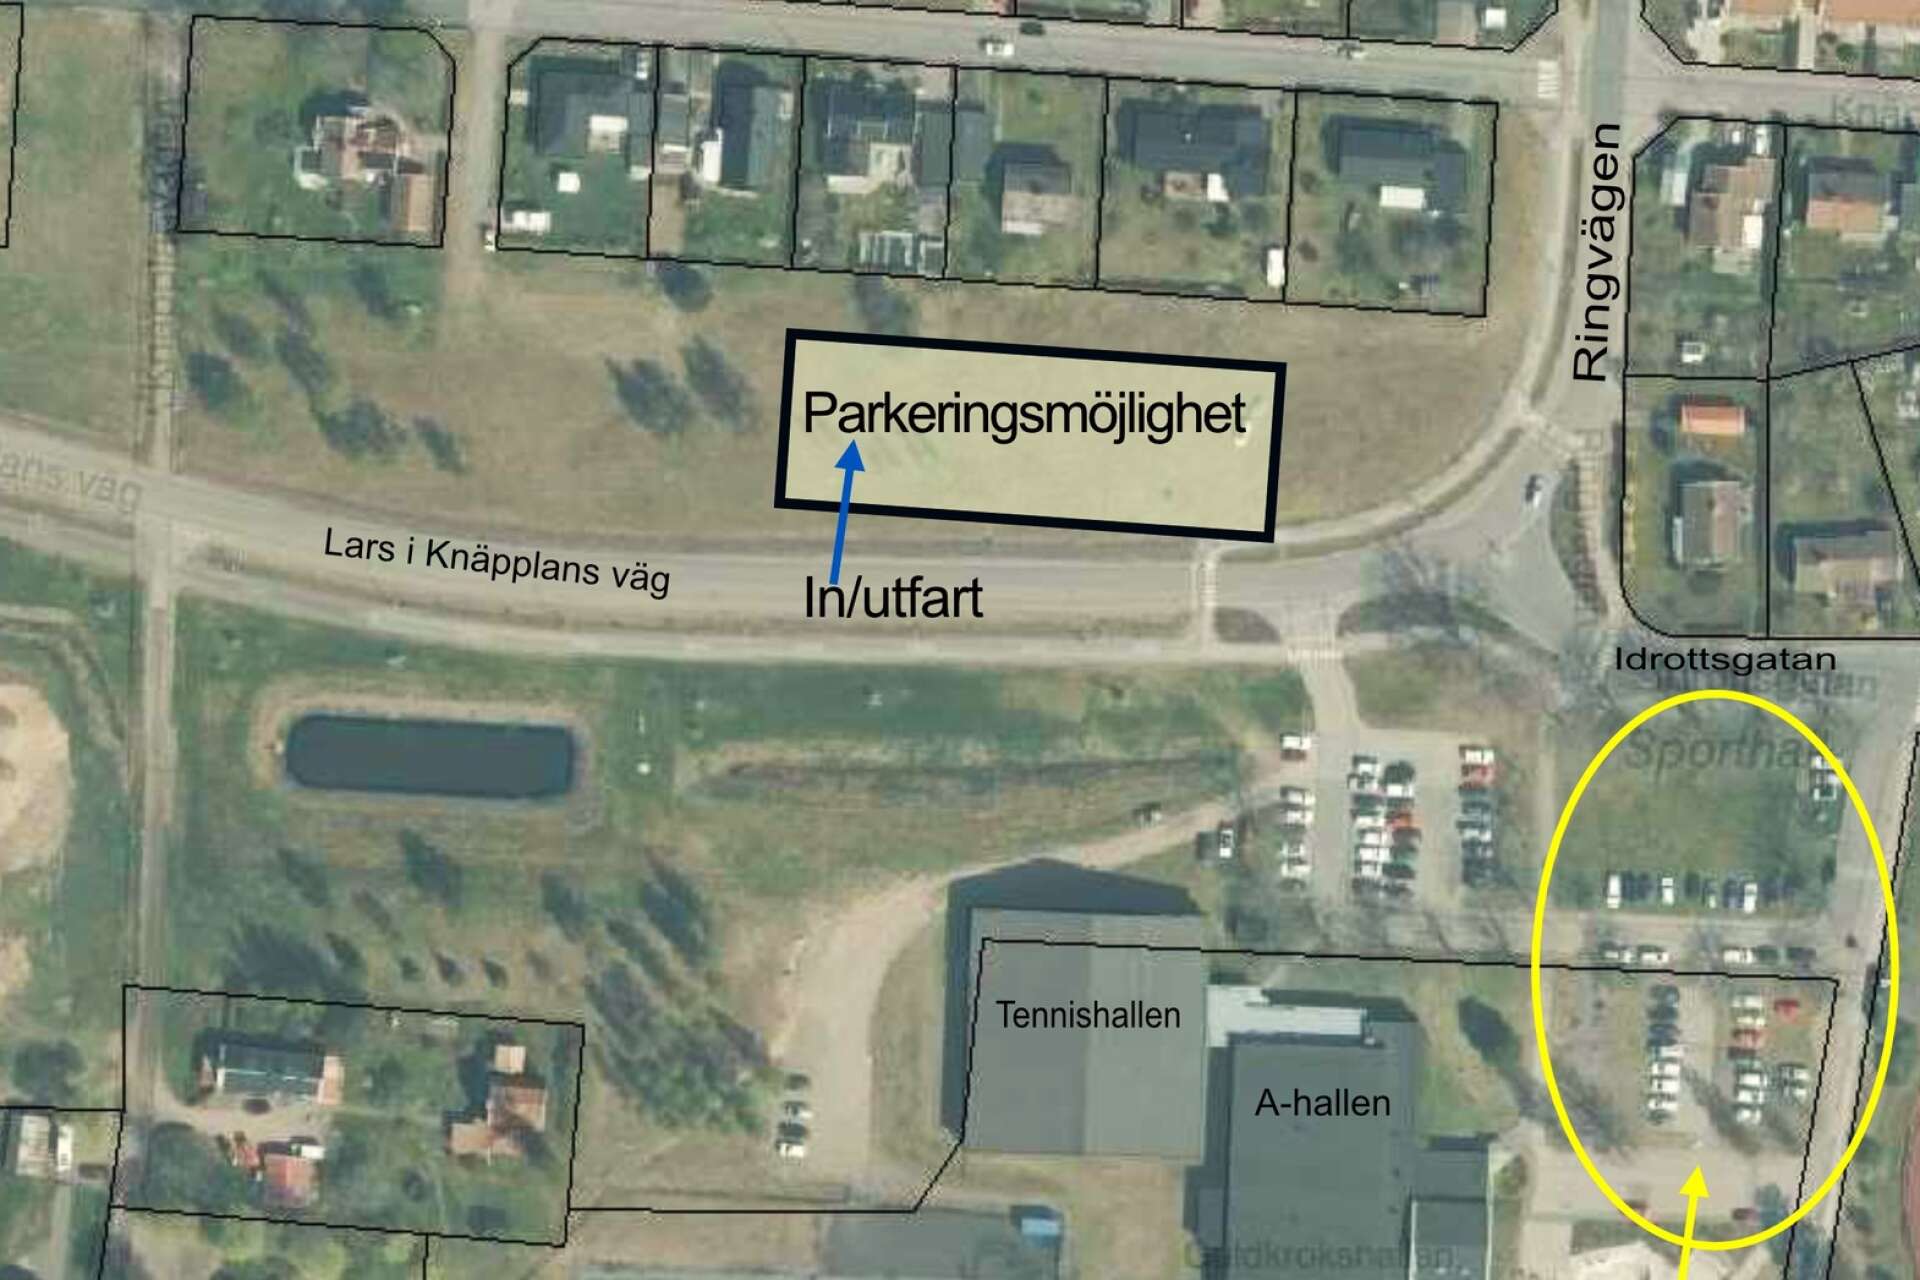 Förslaget innebär parkering på norra sidan om Lars i Knäpplans väg med en ny in- och utfart. Parkeringen ersätter delvis p-platserna i den gula ringen, närmast Guldkroksvallen, som ska bli ny entré och utemiljö.